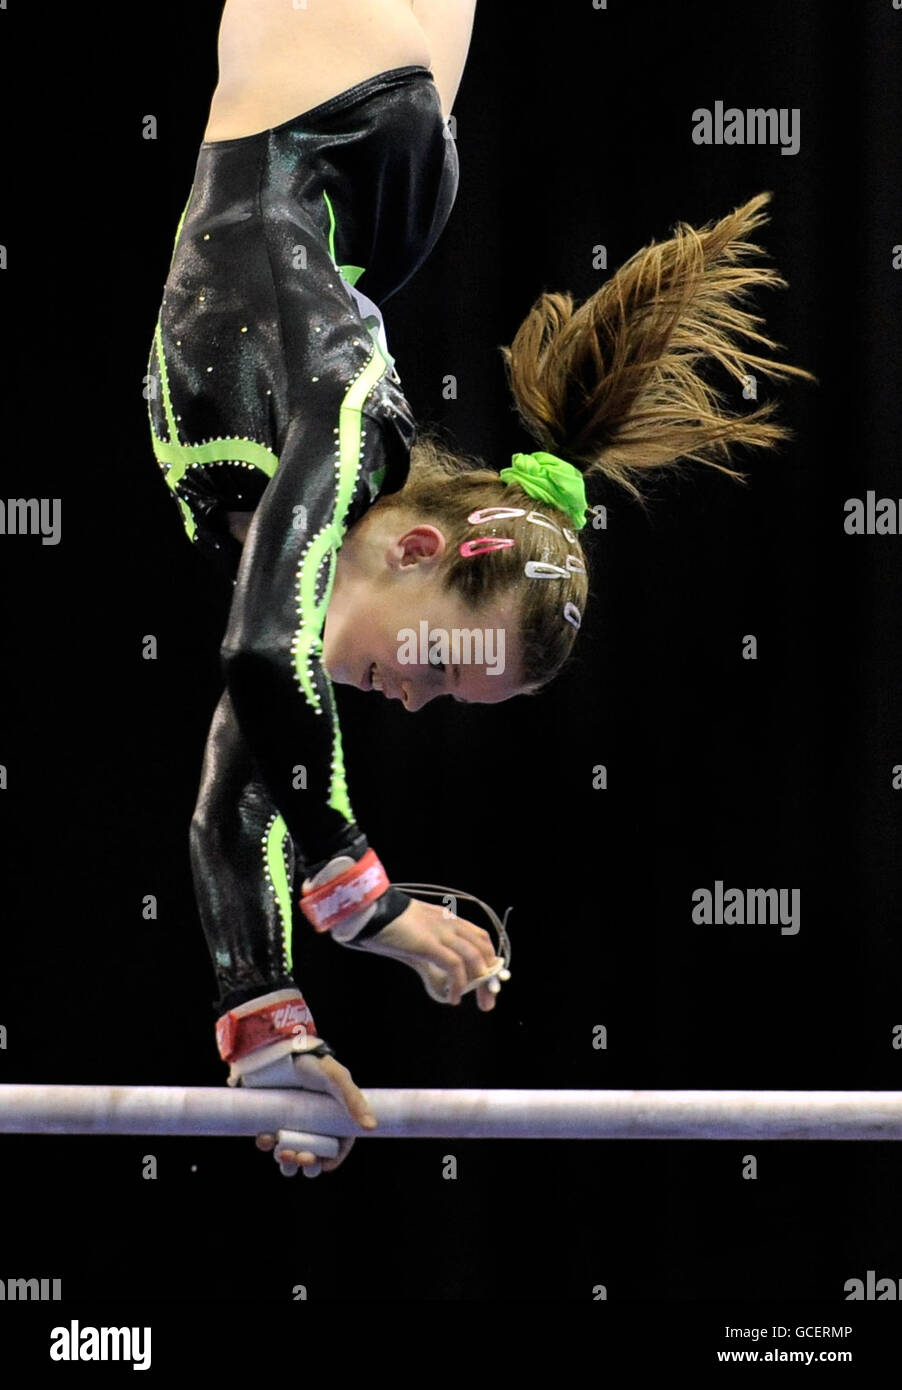 Emma Lunn, de l'Irlande, participe aux compétitions sur les barres asymétriques lors de la qualification junior des femmes des championnats européens de gymnastique à la National Indoor Arena, Birmingham Banque D'Images